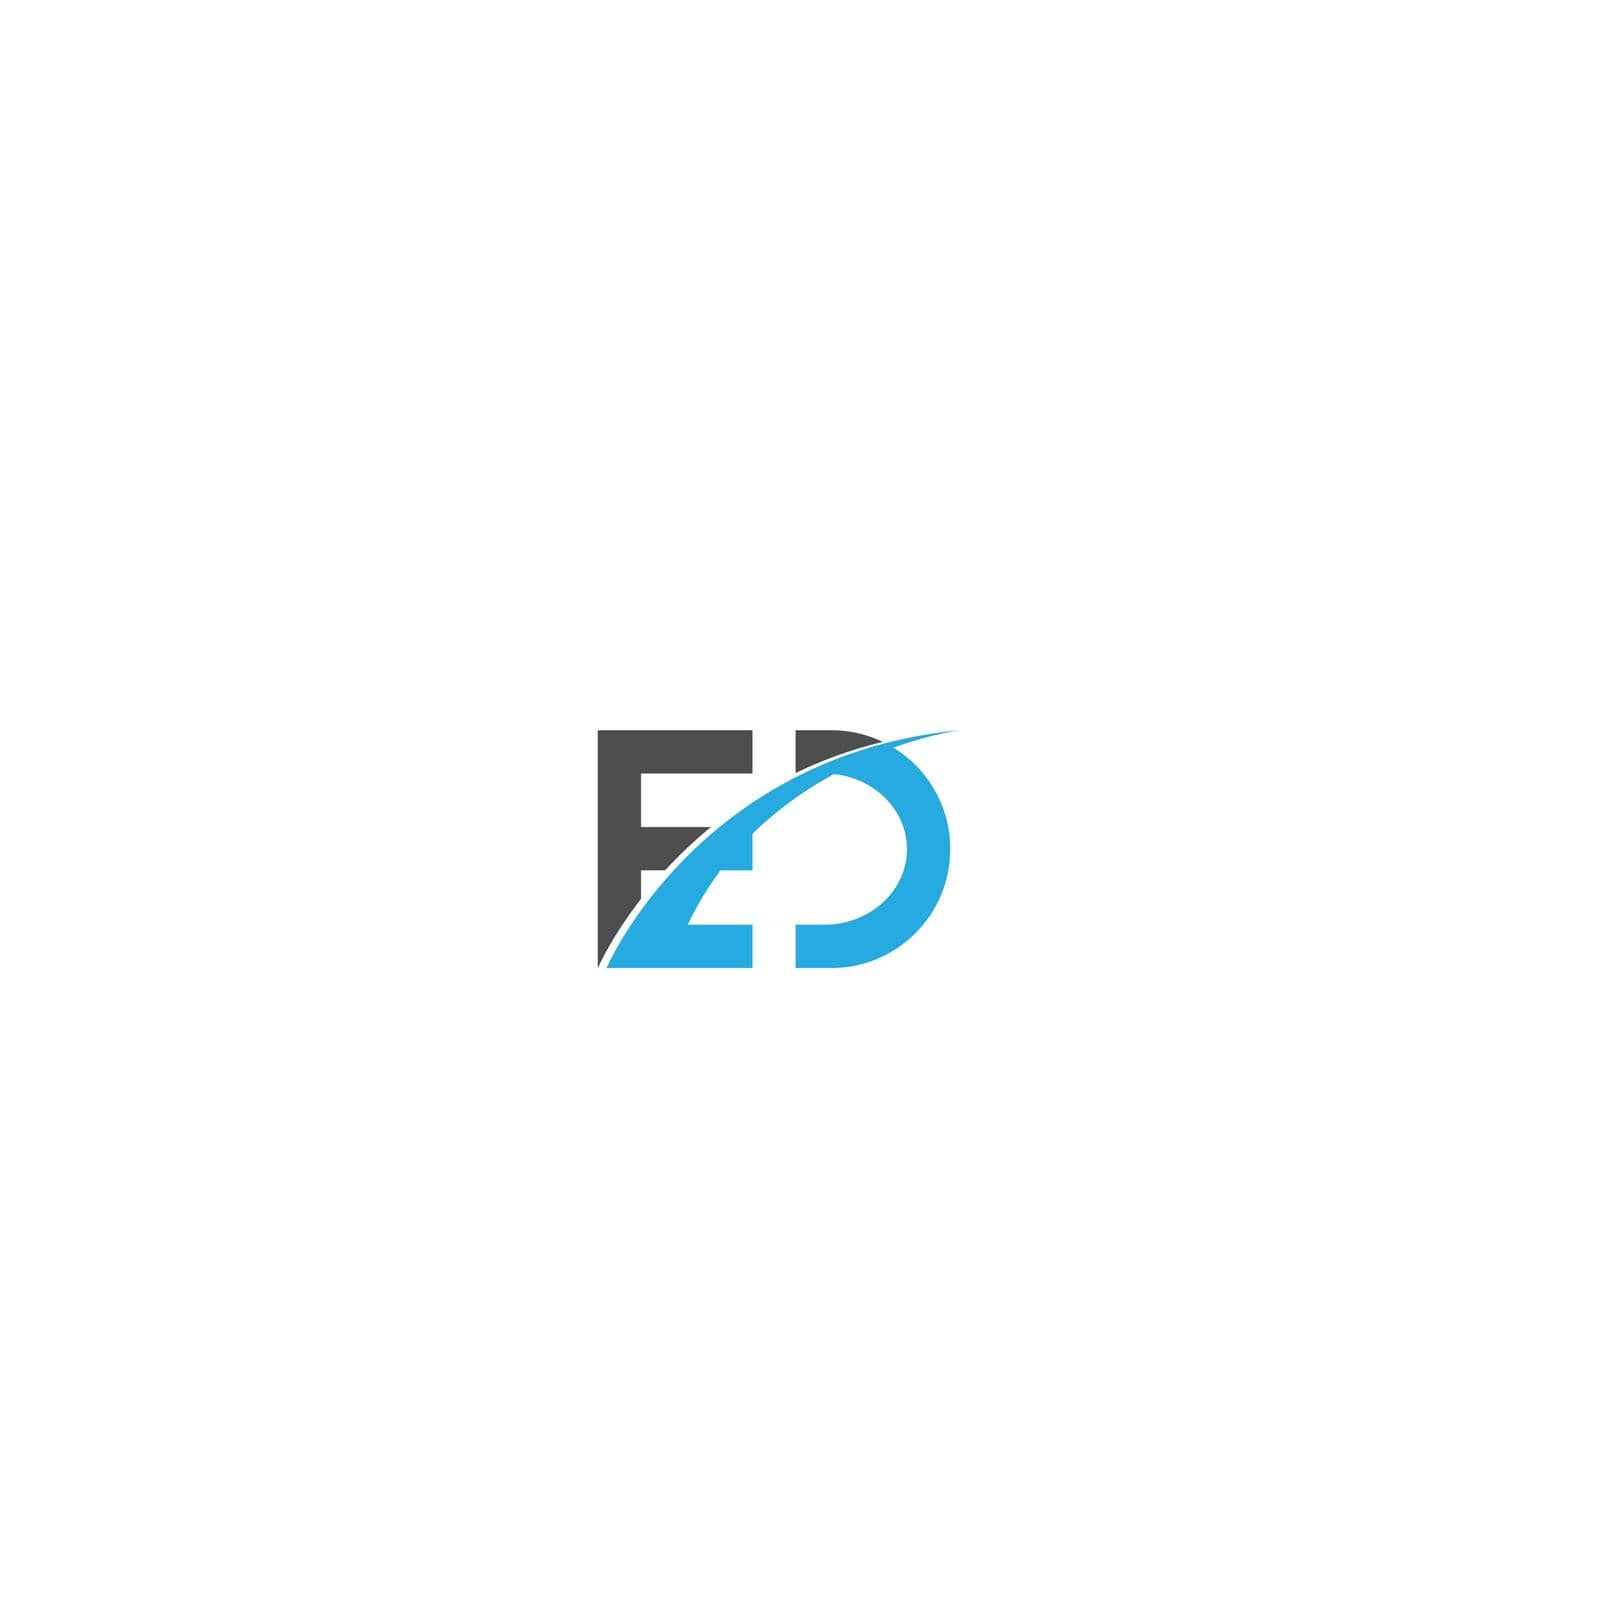 Letter ed logo images design vector